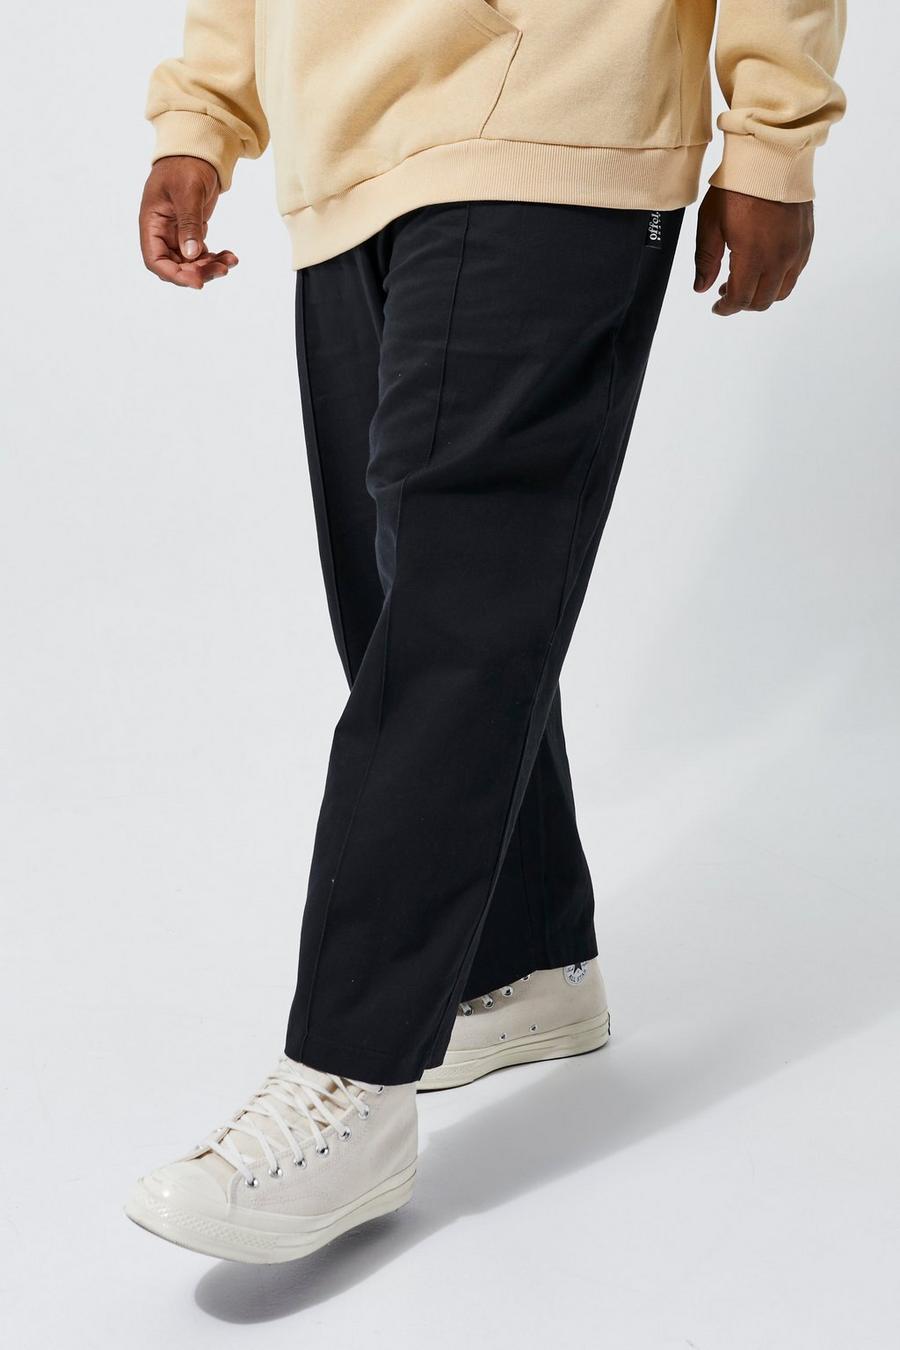 Plus Skate Fit Chino-Hose mit elastischem Bund, Black schwarz